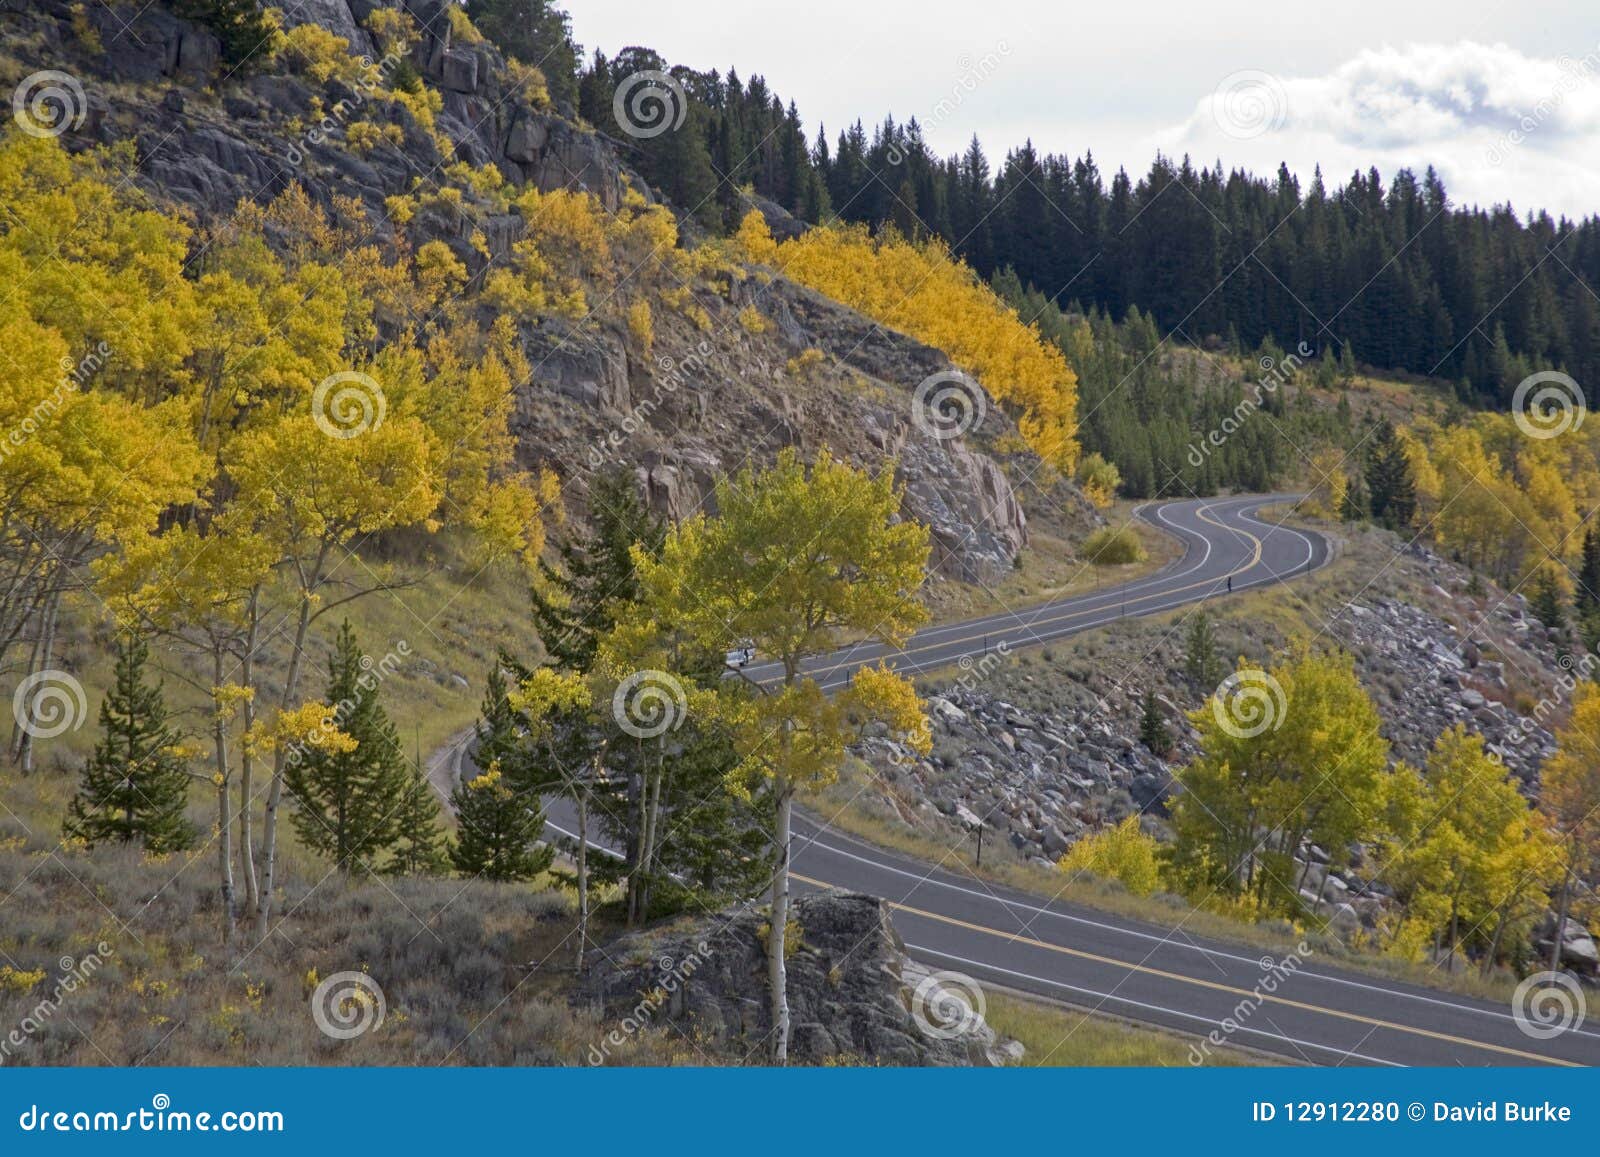 aspen along beartooth highway